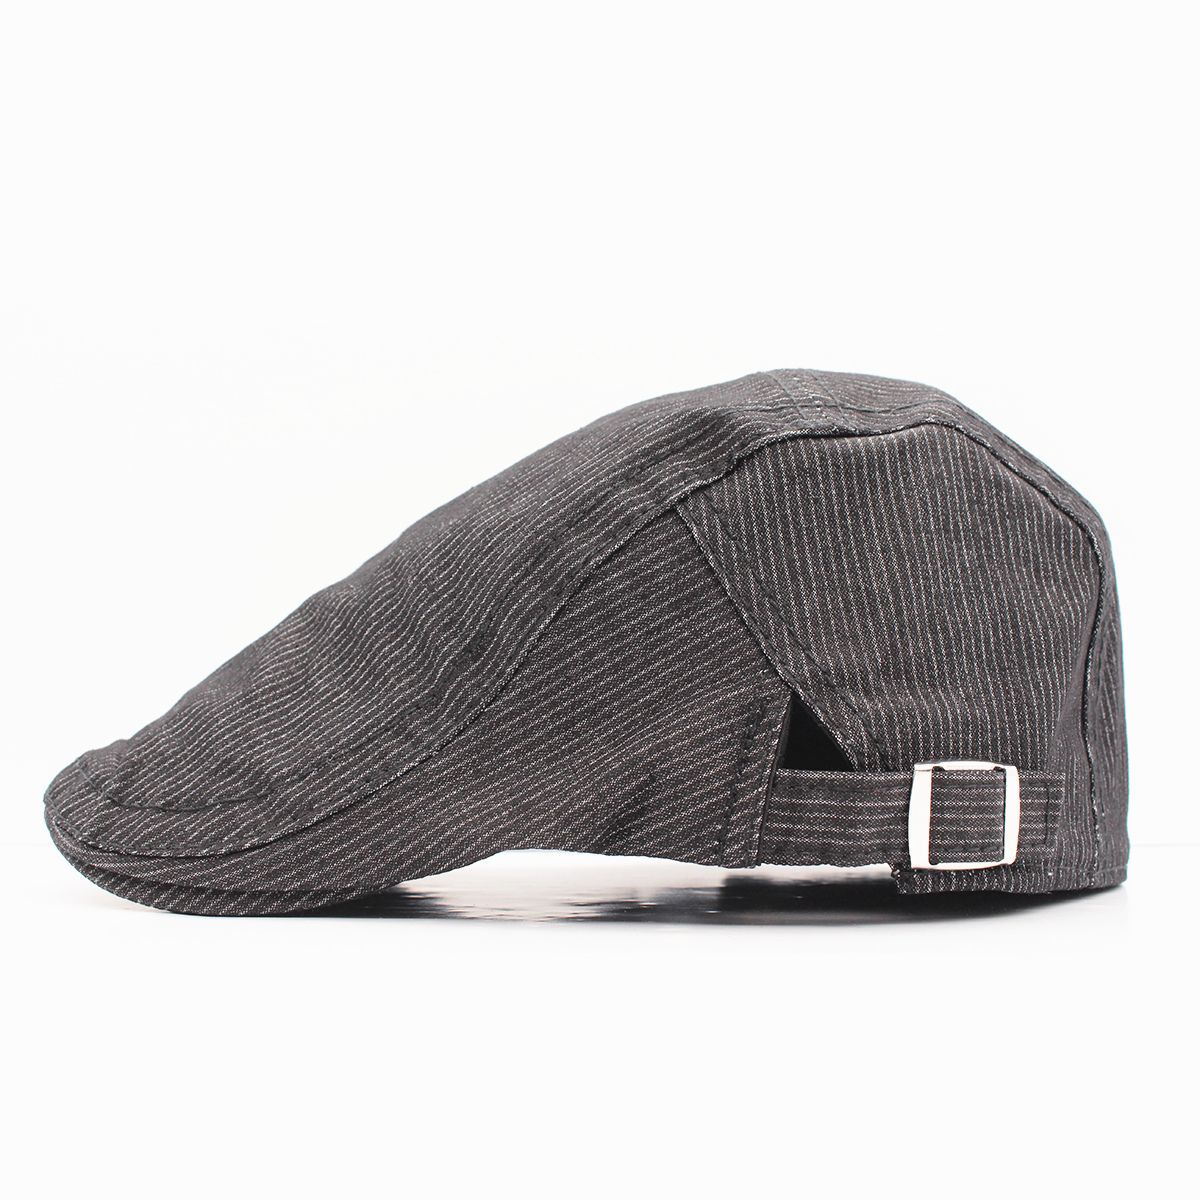 ハンチング帽子 ストライプ柄 綿キャップ 帽子 56~59cm HC172-1 - メルカリ